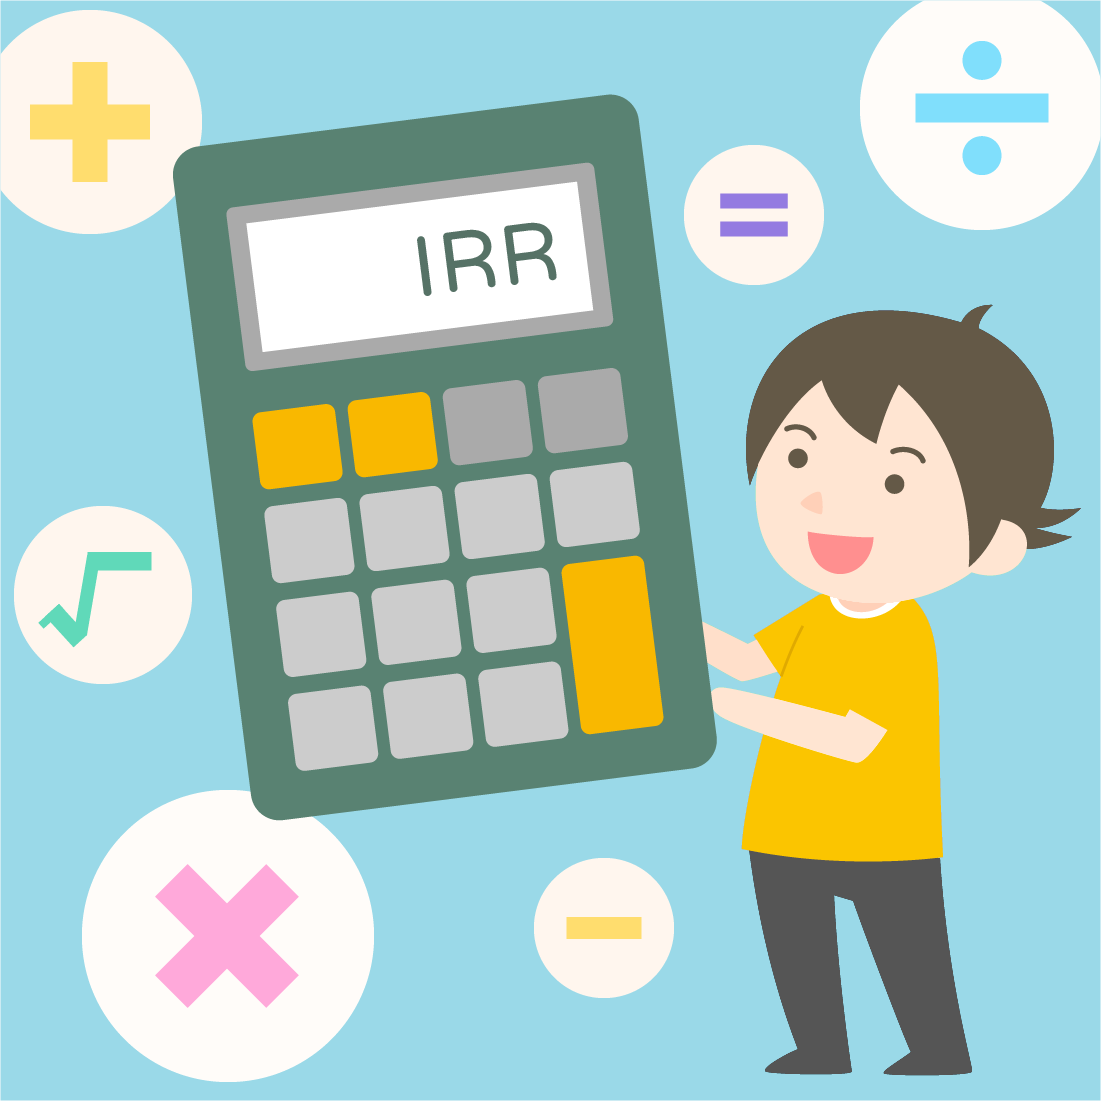 一個人開心地拿著儲蓄險計算機，結果欄文字顯示IRR，背景是顏色繽紛的數學符號